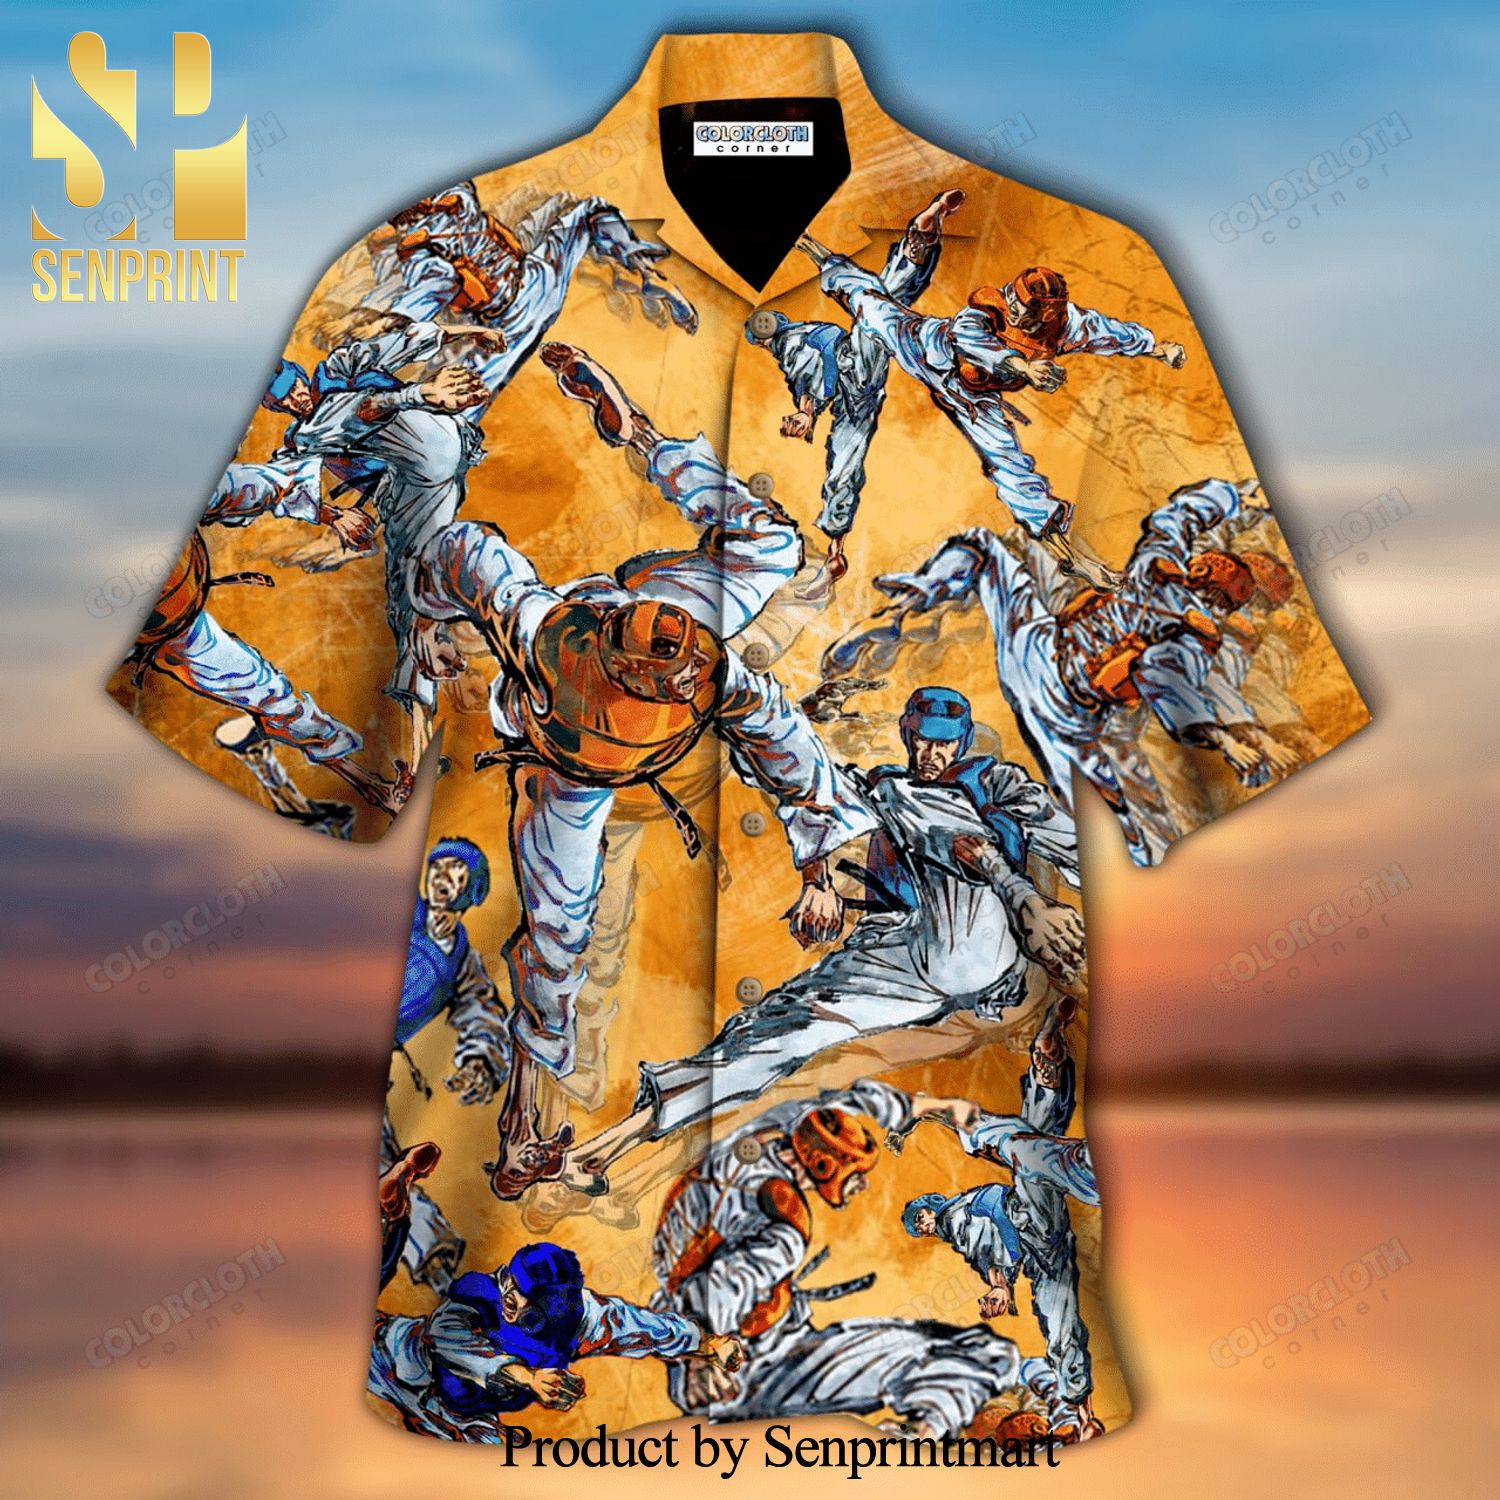 Taekwondo New Outfit Full Printed Hawaiian Shirt